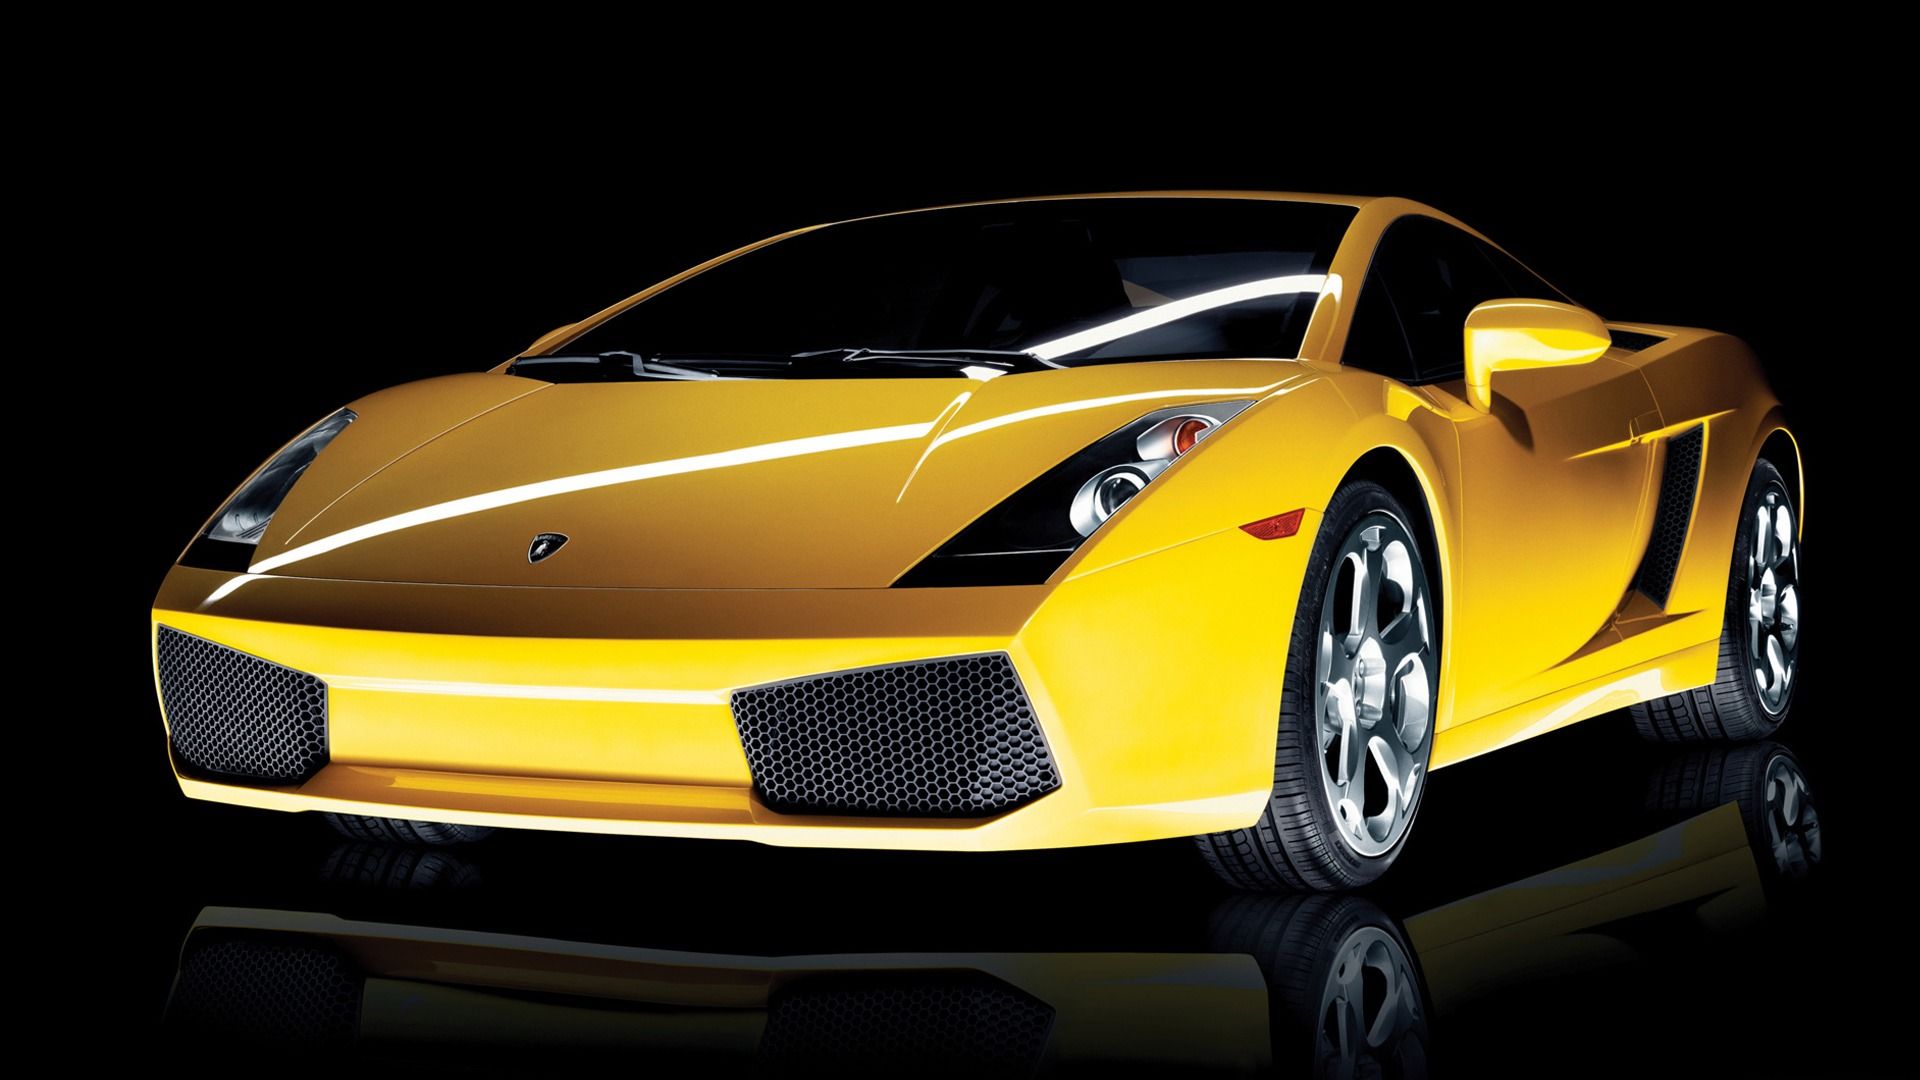 2003 Lamborghini Gallardo HD Desktop Wallpaper - 1920x1080 ...